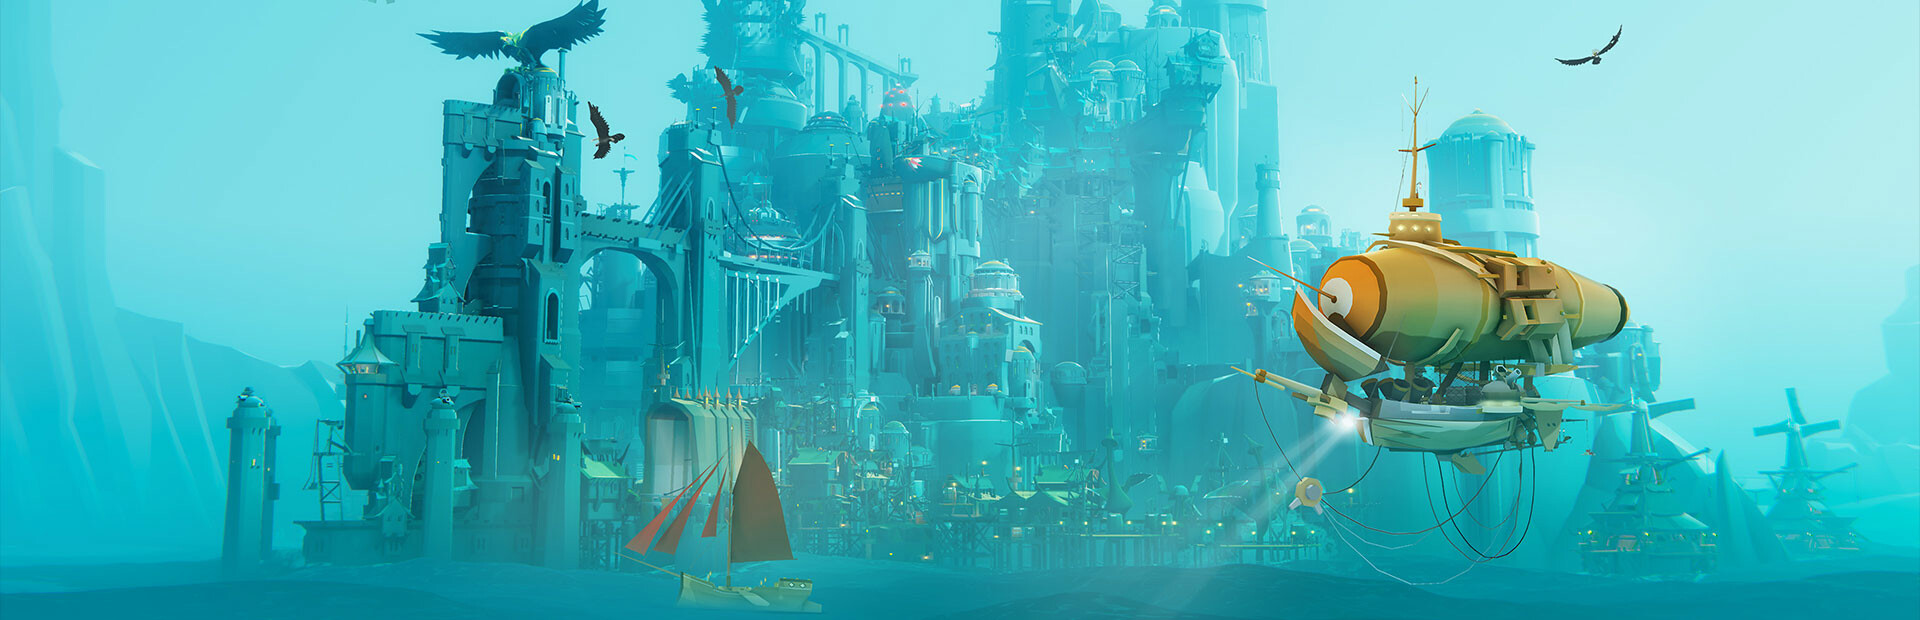 [Article] Bulwark: Falconeer Chronicles, un city builder dans un vaste monde océanique rempli de mythes oubliés